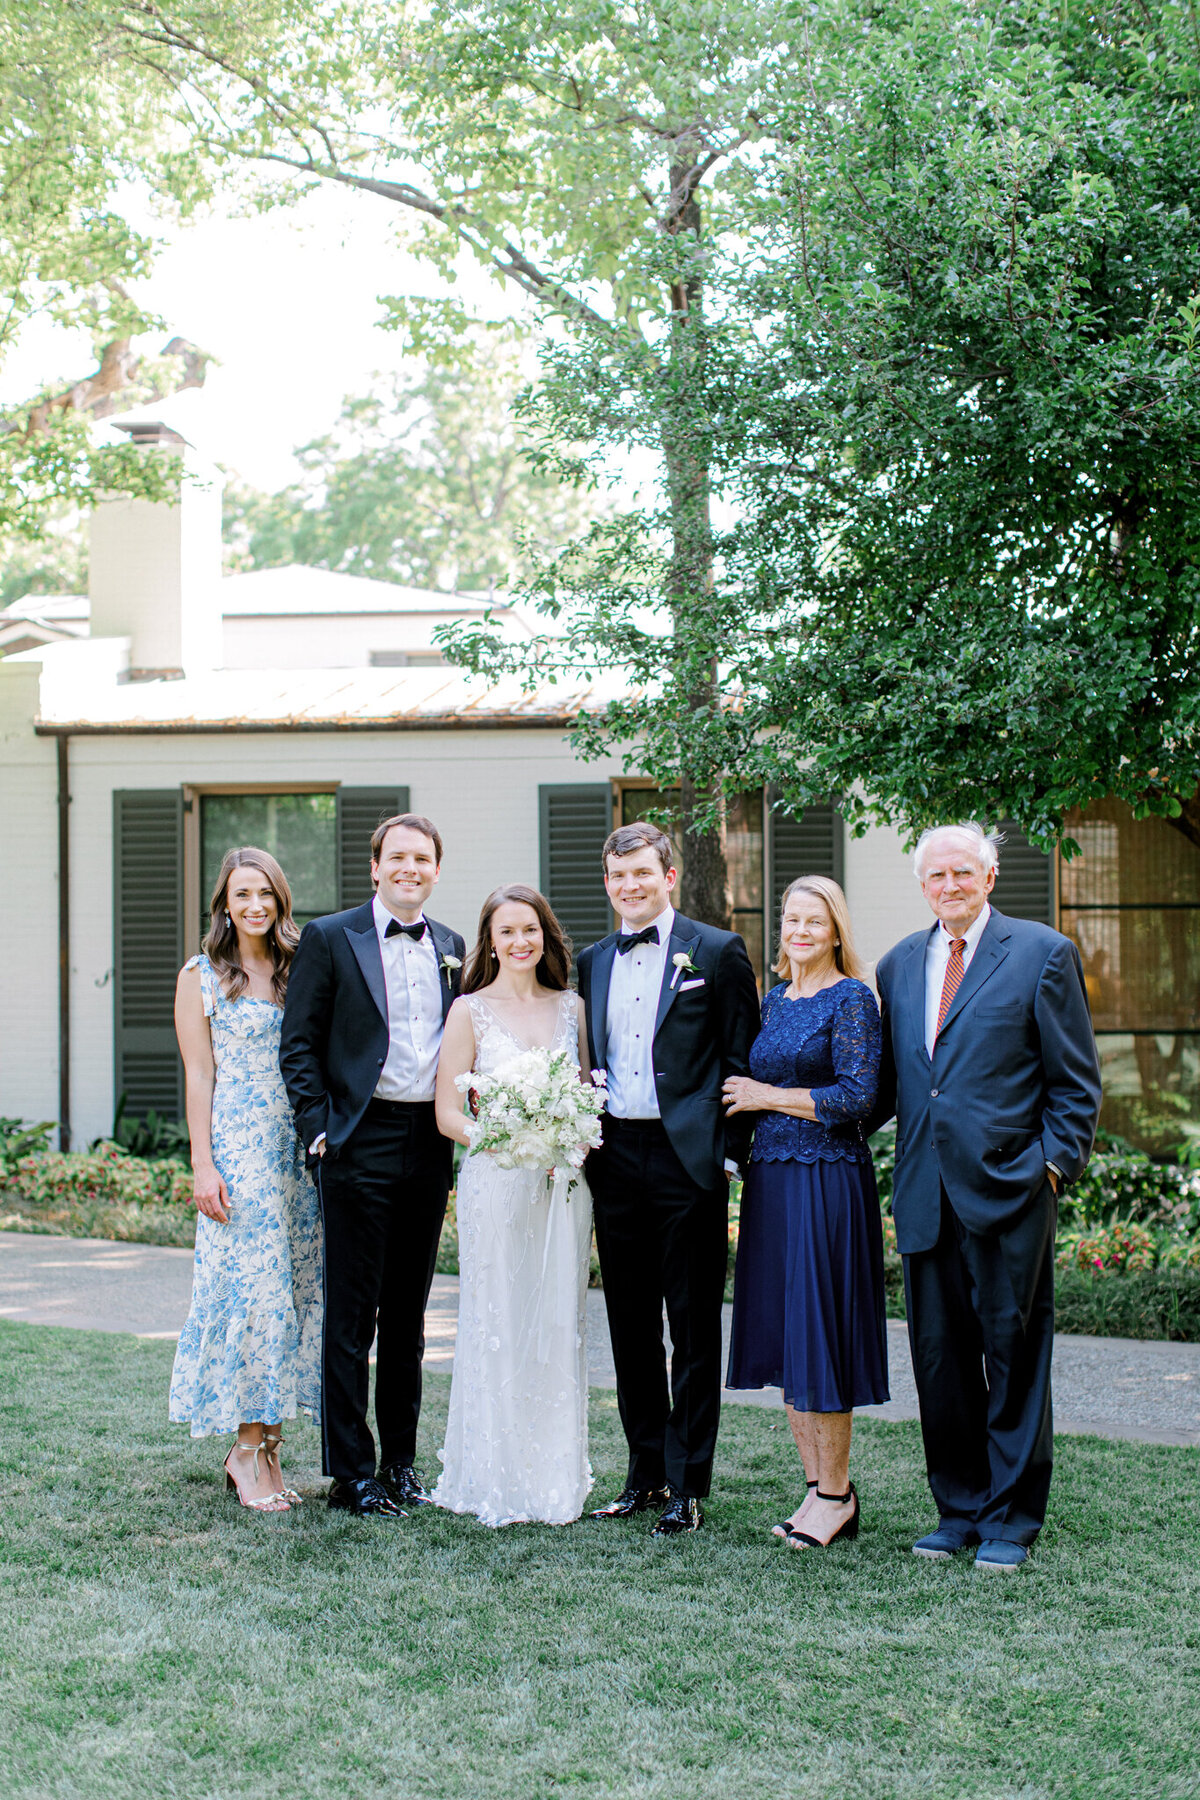 Gena & Matt's Wedding at the Dallas Arboretum | Dallas Wedding Photographer | Sami Kathryn Photography-125